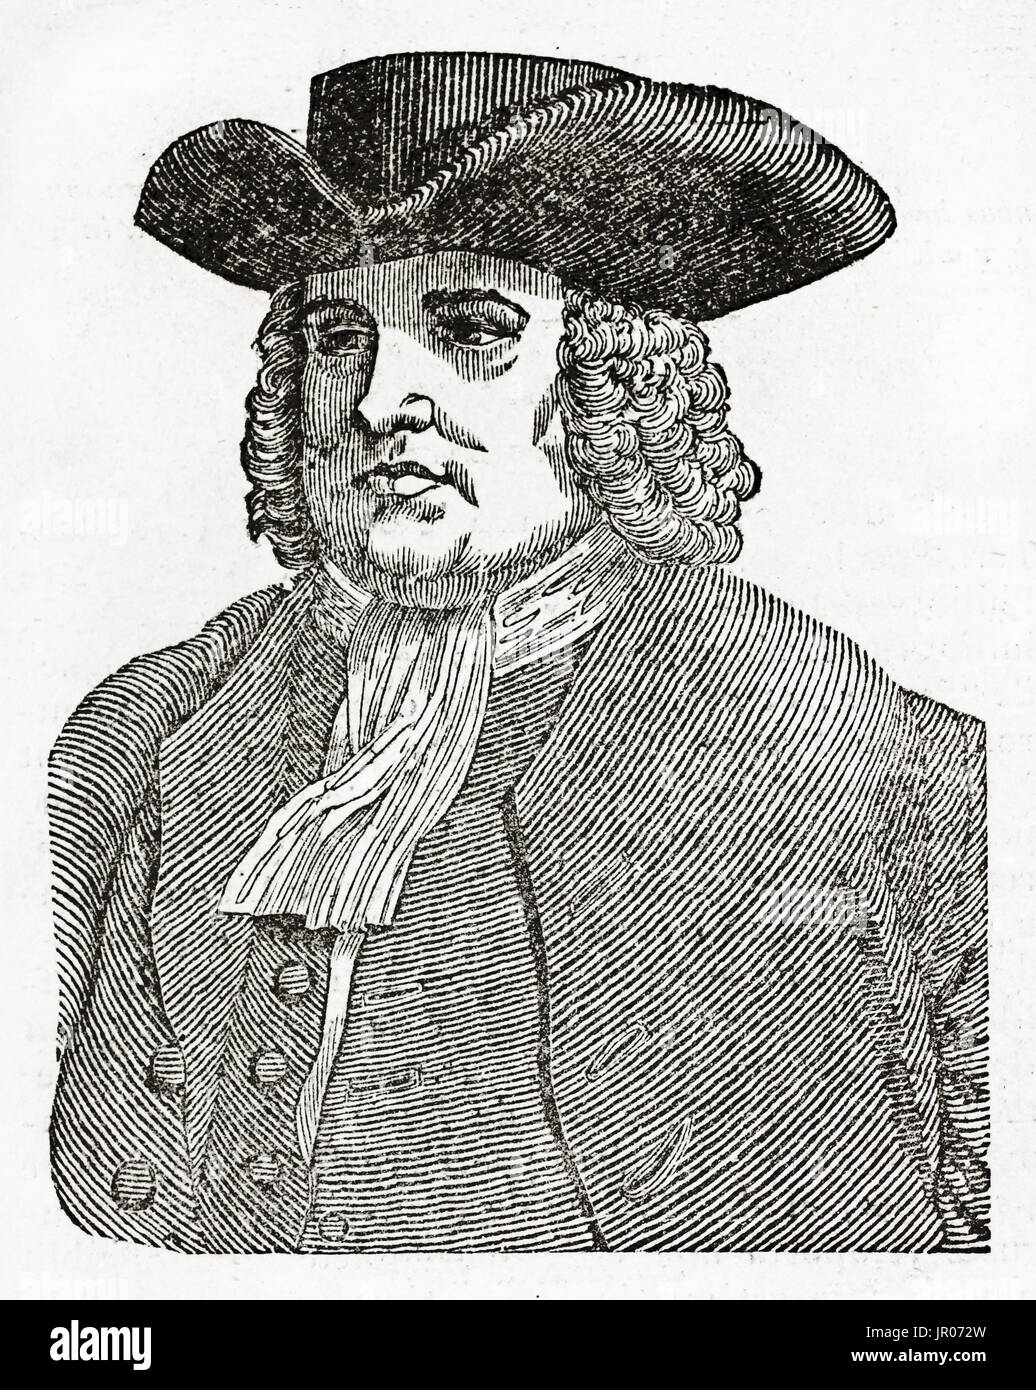 Vecchio ritratto inciso di William Penn ( 1644 - 1718), fondatore della Provincia di Pennsylvania. Da autore non identificato, pubblicato il Magasin Pittoresqu Foto Stock